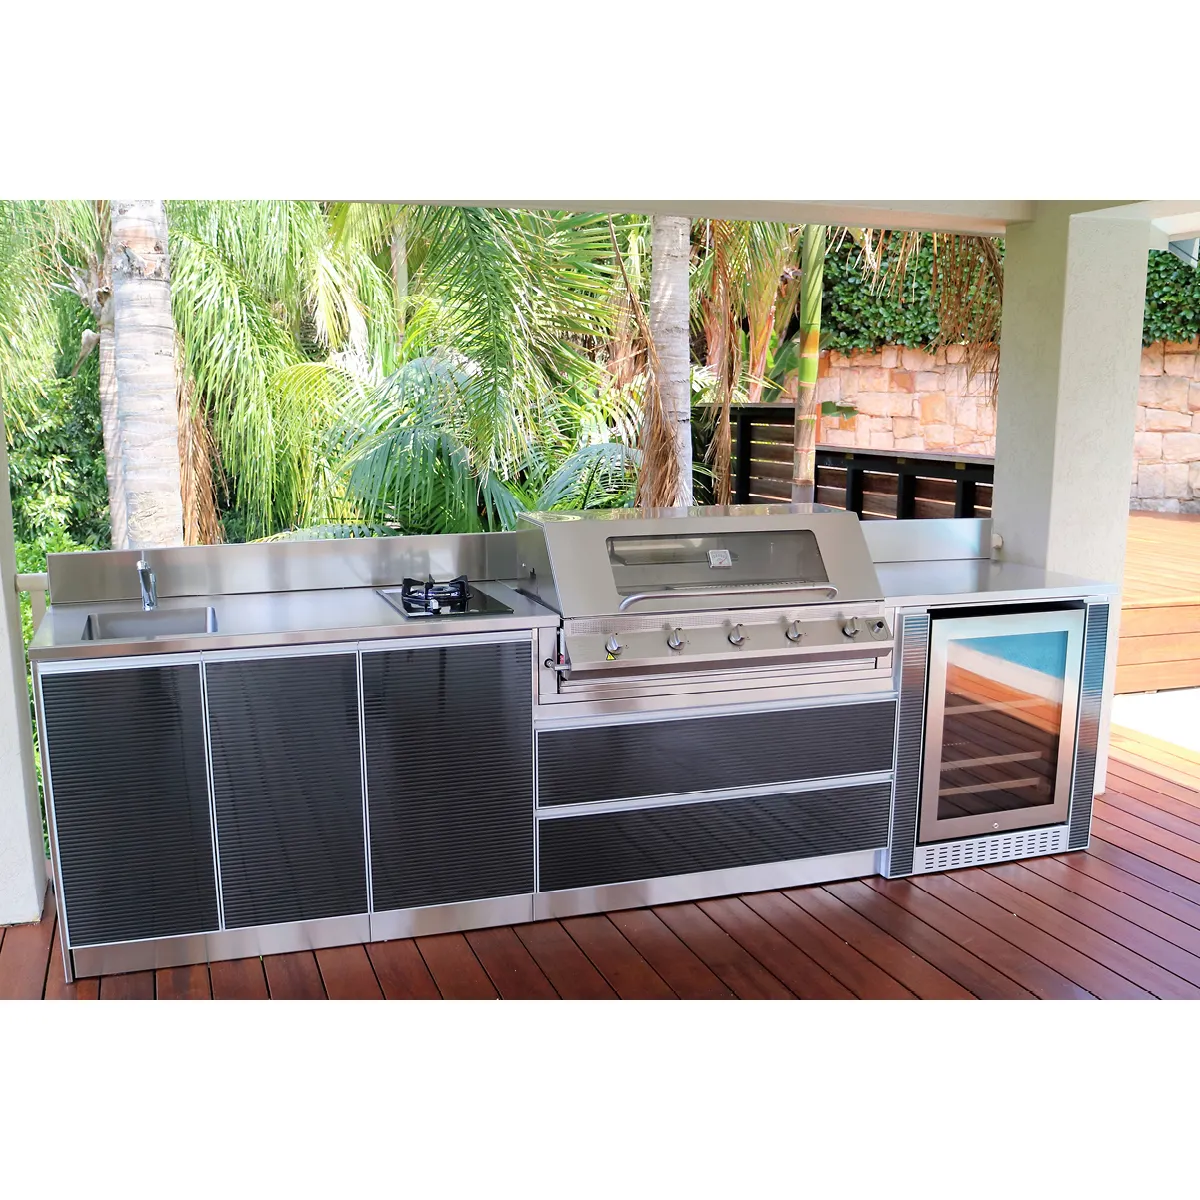 BBQ Island Outdoor Küchen grill mit Kühlschrank für Haus und Garten Aus Edelstahl